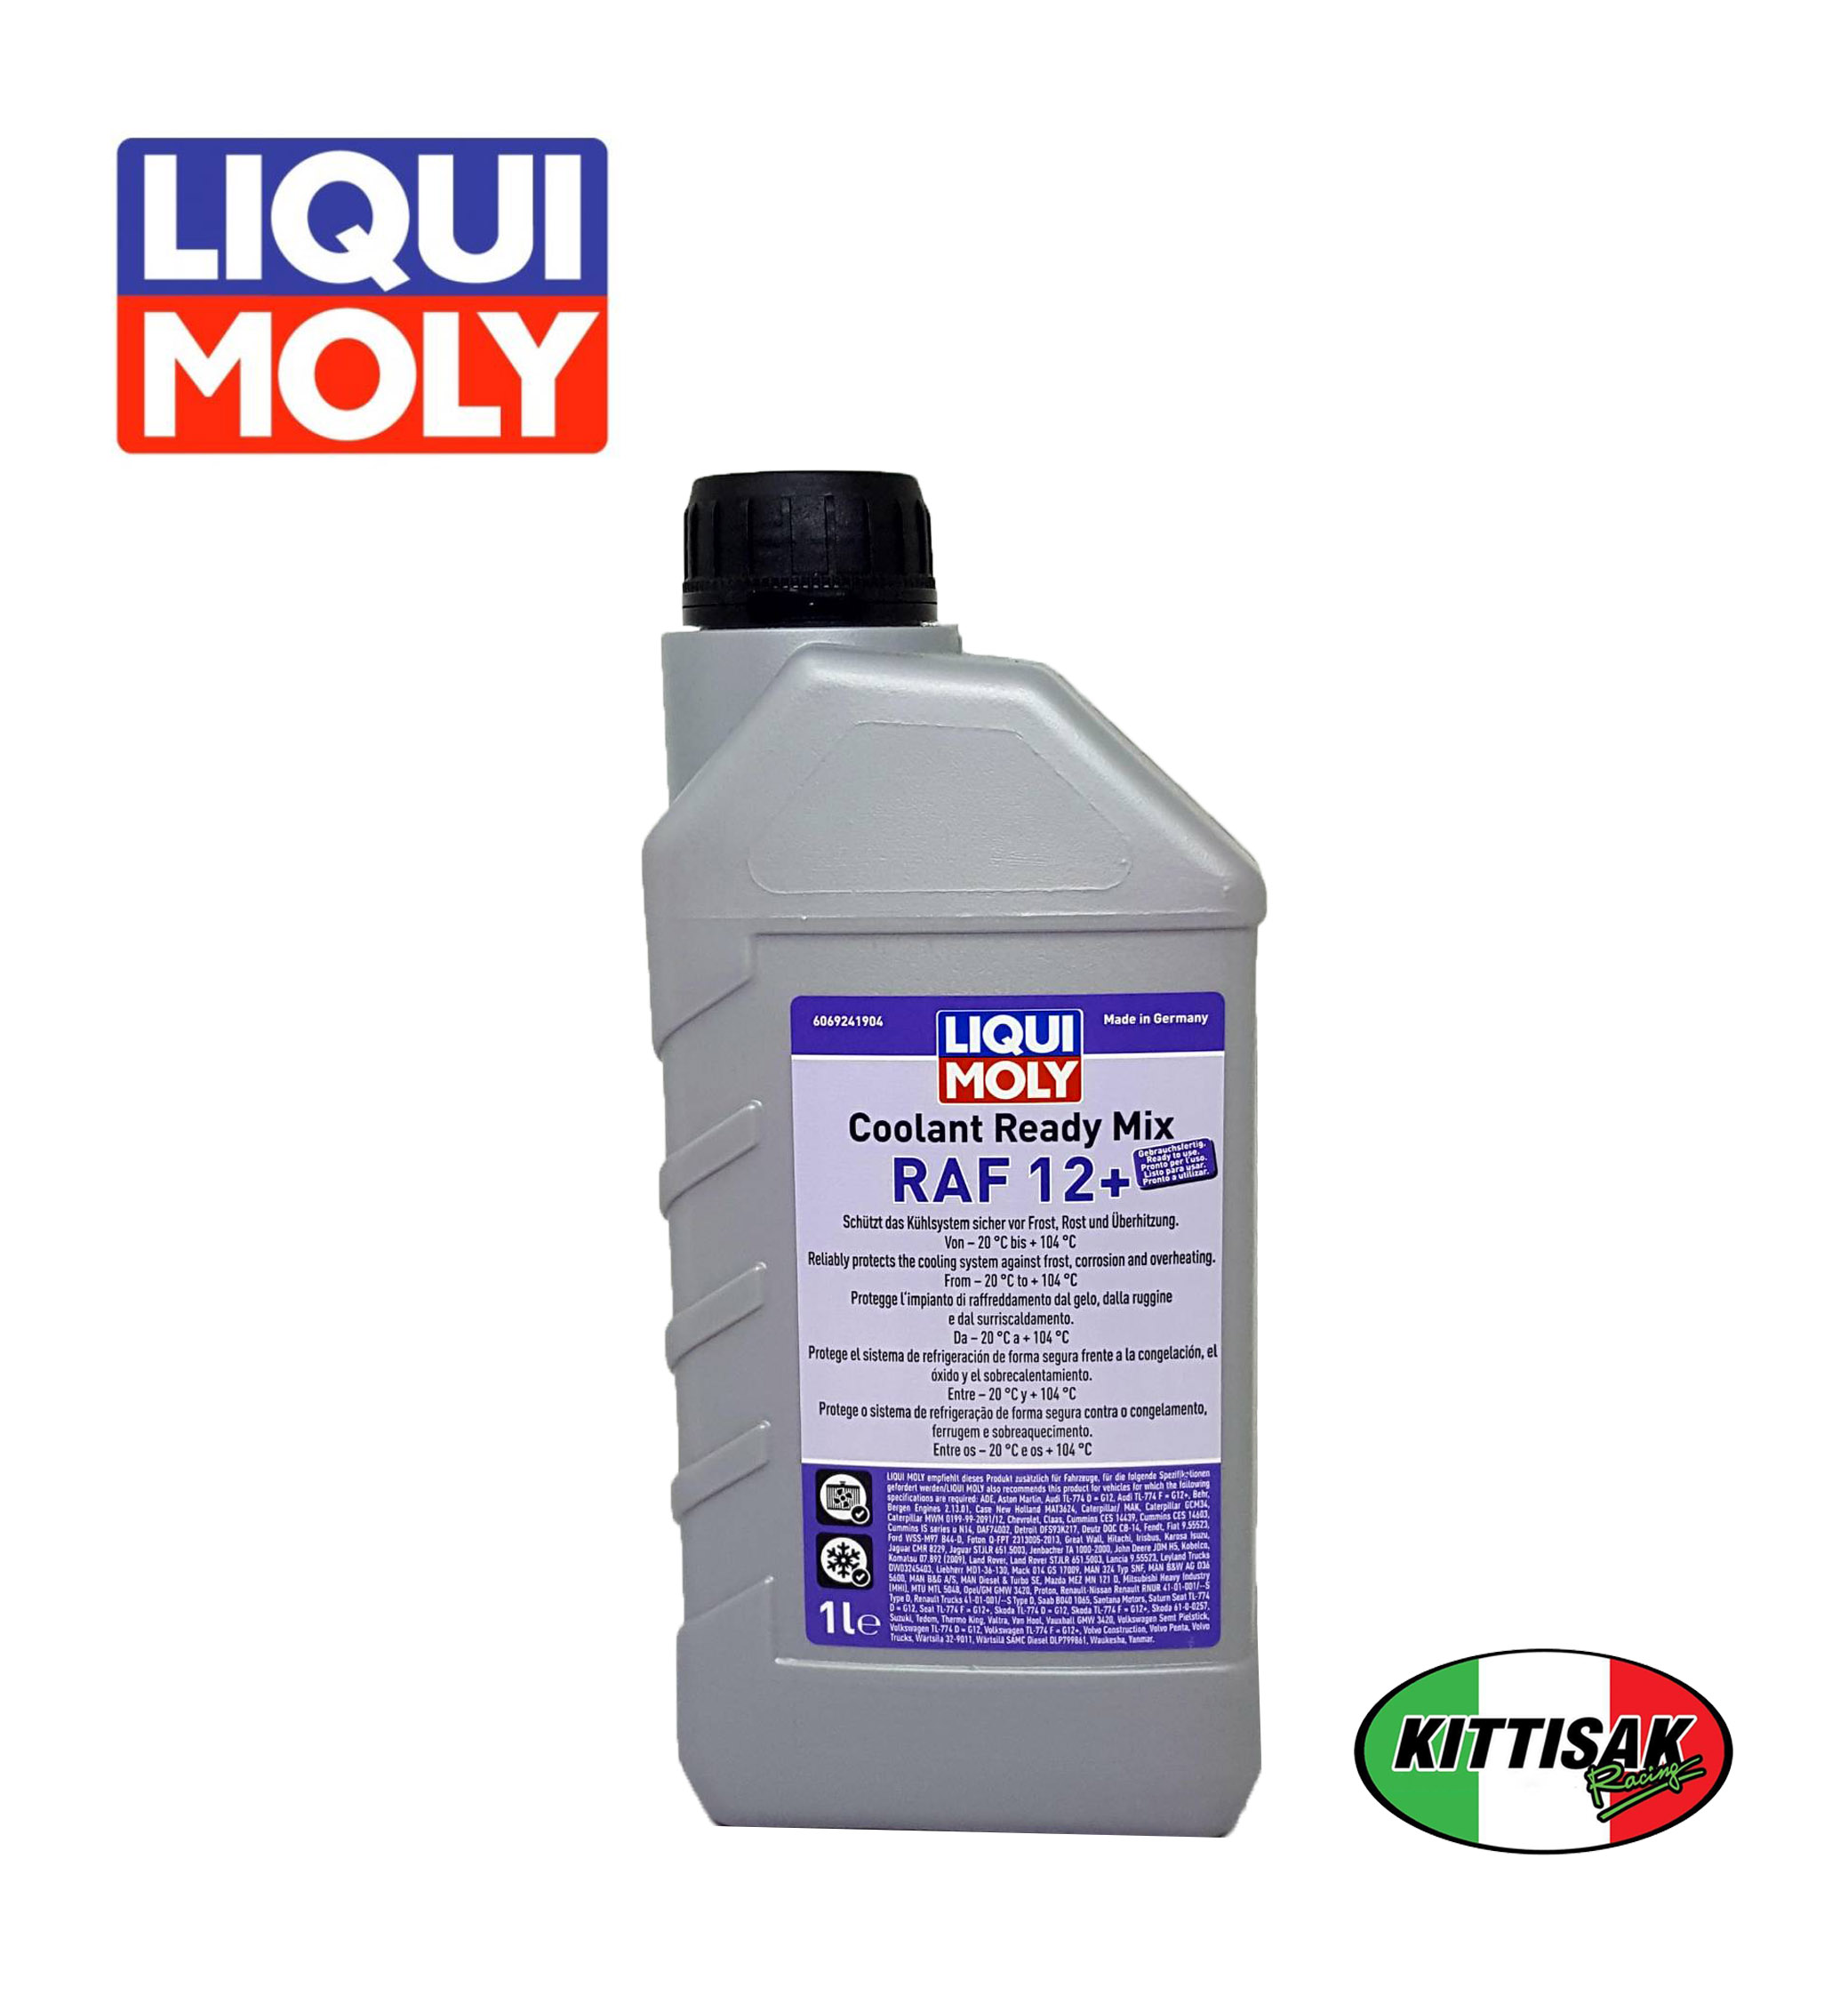 น้ำยาหล่อเย็น LIQUI MOLY Coolant Ready Mix RAF 12+ ขนาด1ลิตร